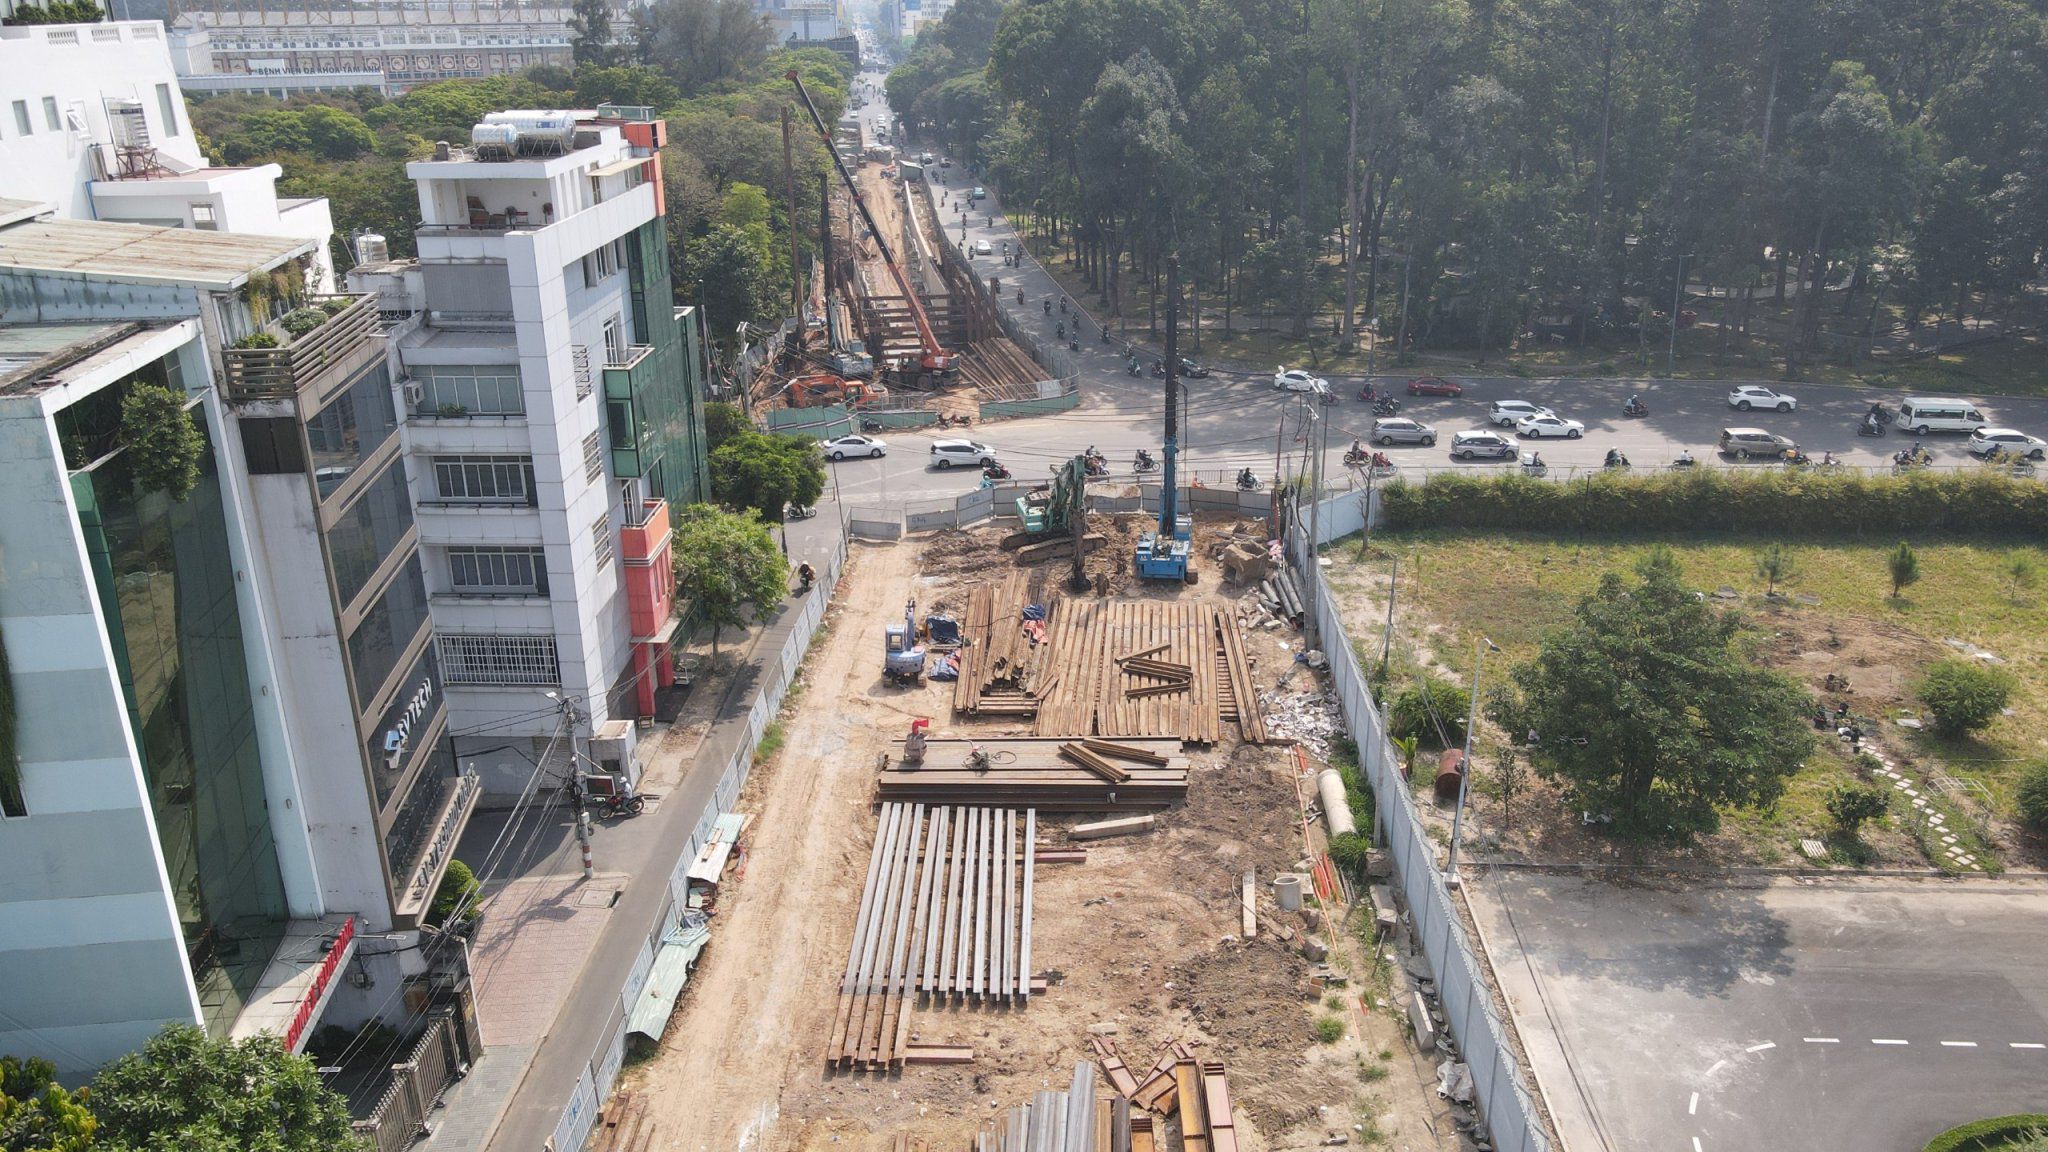 Ngoài mở rộng rào chắn, nhà thầu sẽ xây dựng 2 cầu tạm ở cửa ngõ sân bay Tân Sơn Nhất để phục vụ cho việc thi công hầm chui tại đây (ảnh: A. Tú)